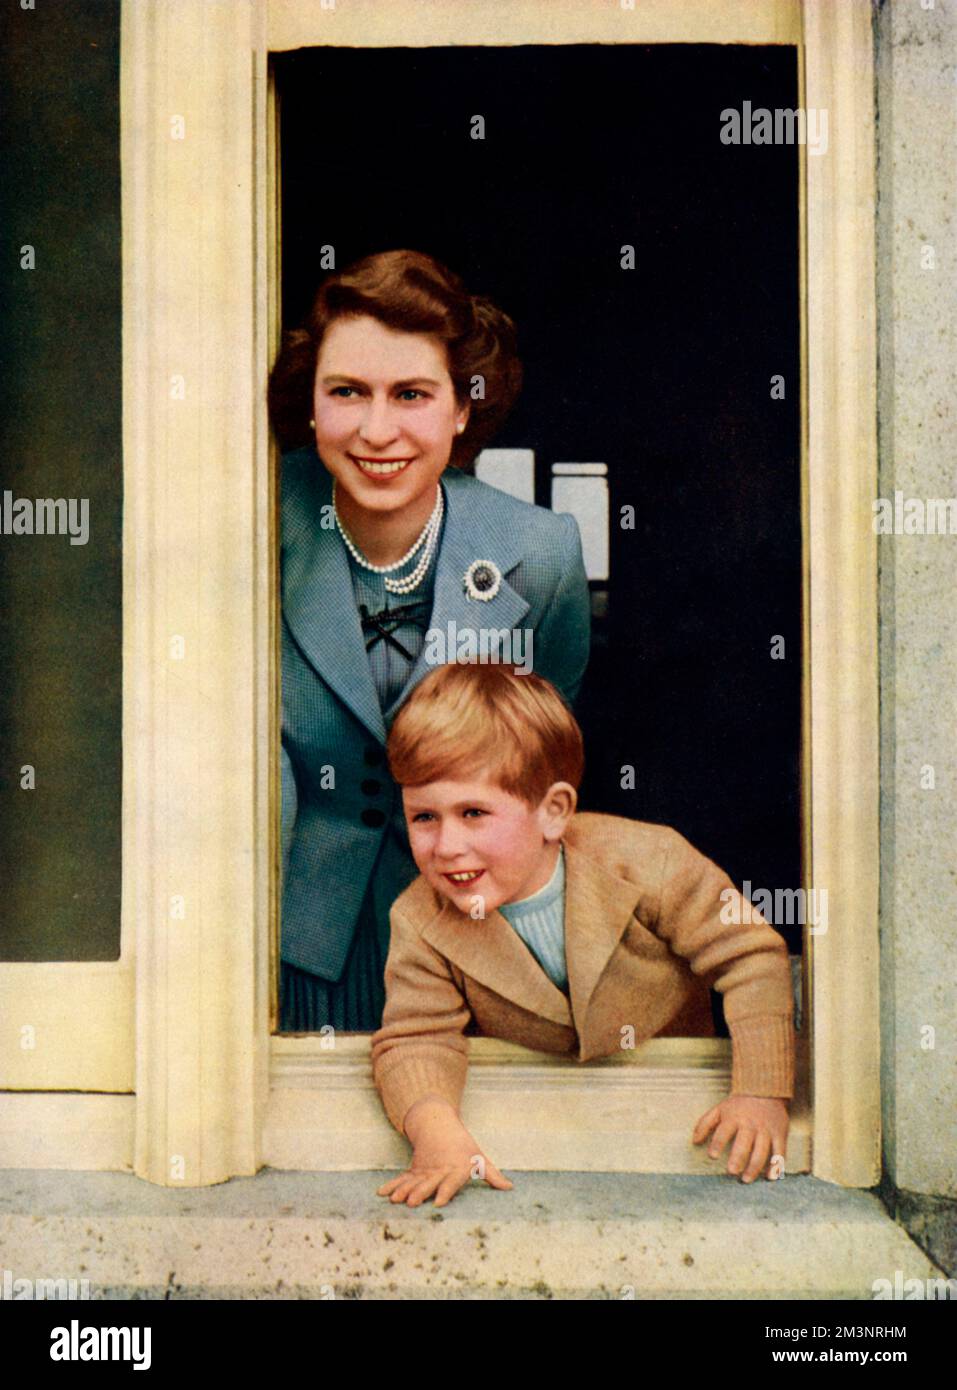 Königin Elizabeth II. Und Prinz Charles, Prinz von Wales, der Thronerbe. Datum: 1949 Stockfoto